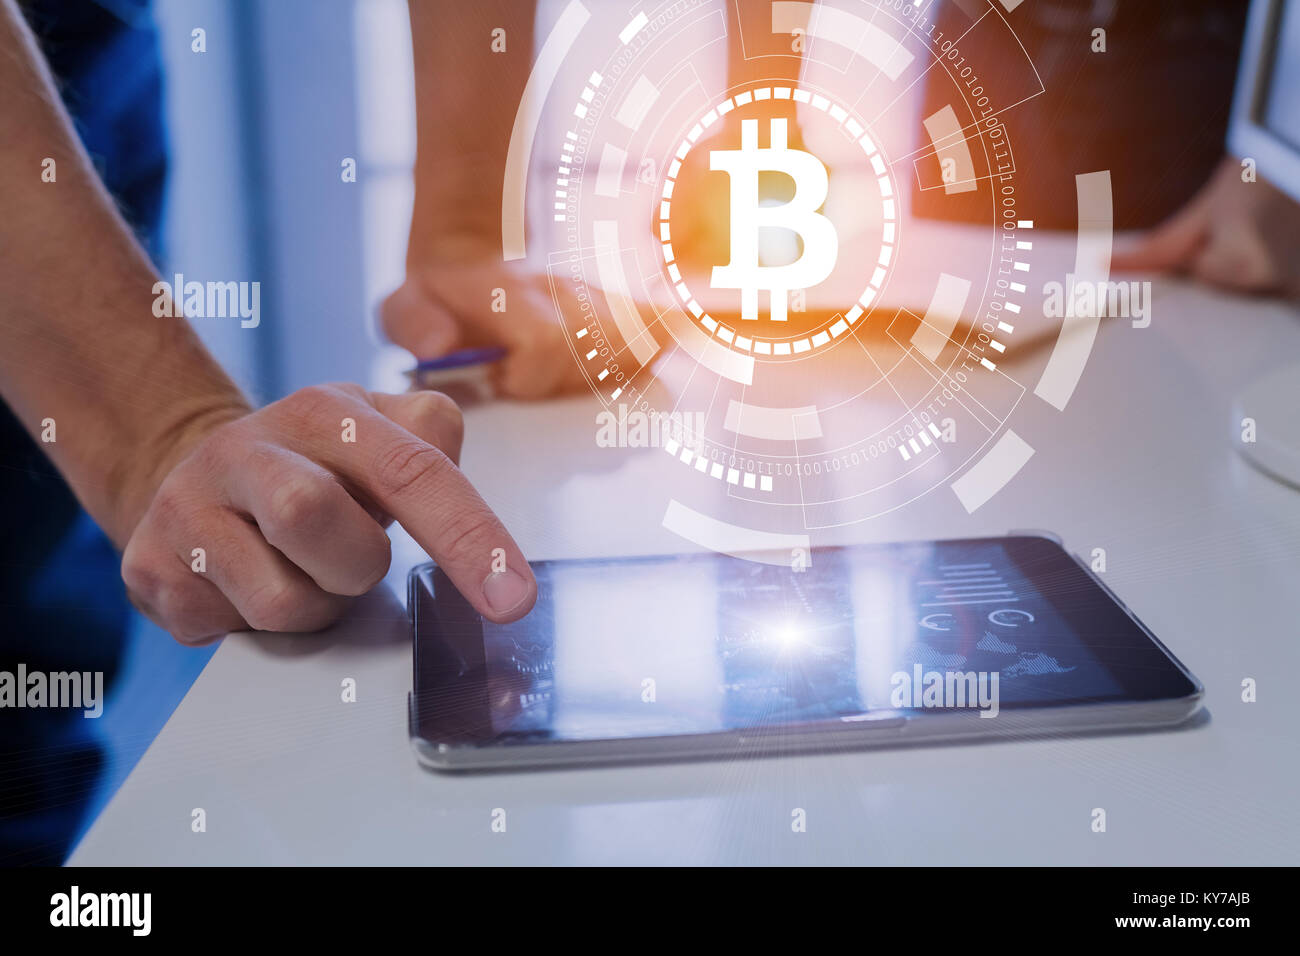 Team von Finanzexperten Trading, Geldanlage oder Zahlung mit bitcoin cryptocurrency Technologie, BTC, Symbol für die Währung auf der virtuellen Schnittstelle, digitale Tablet Stockfoto